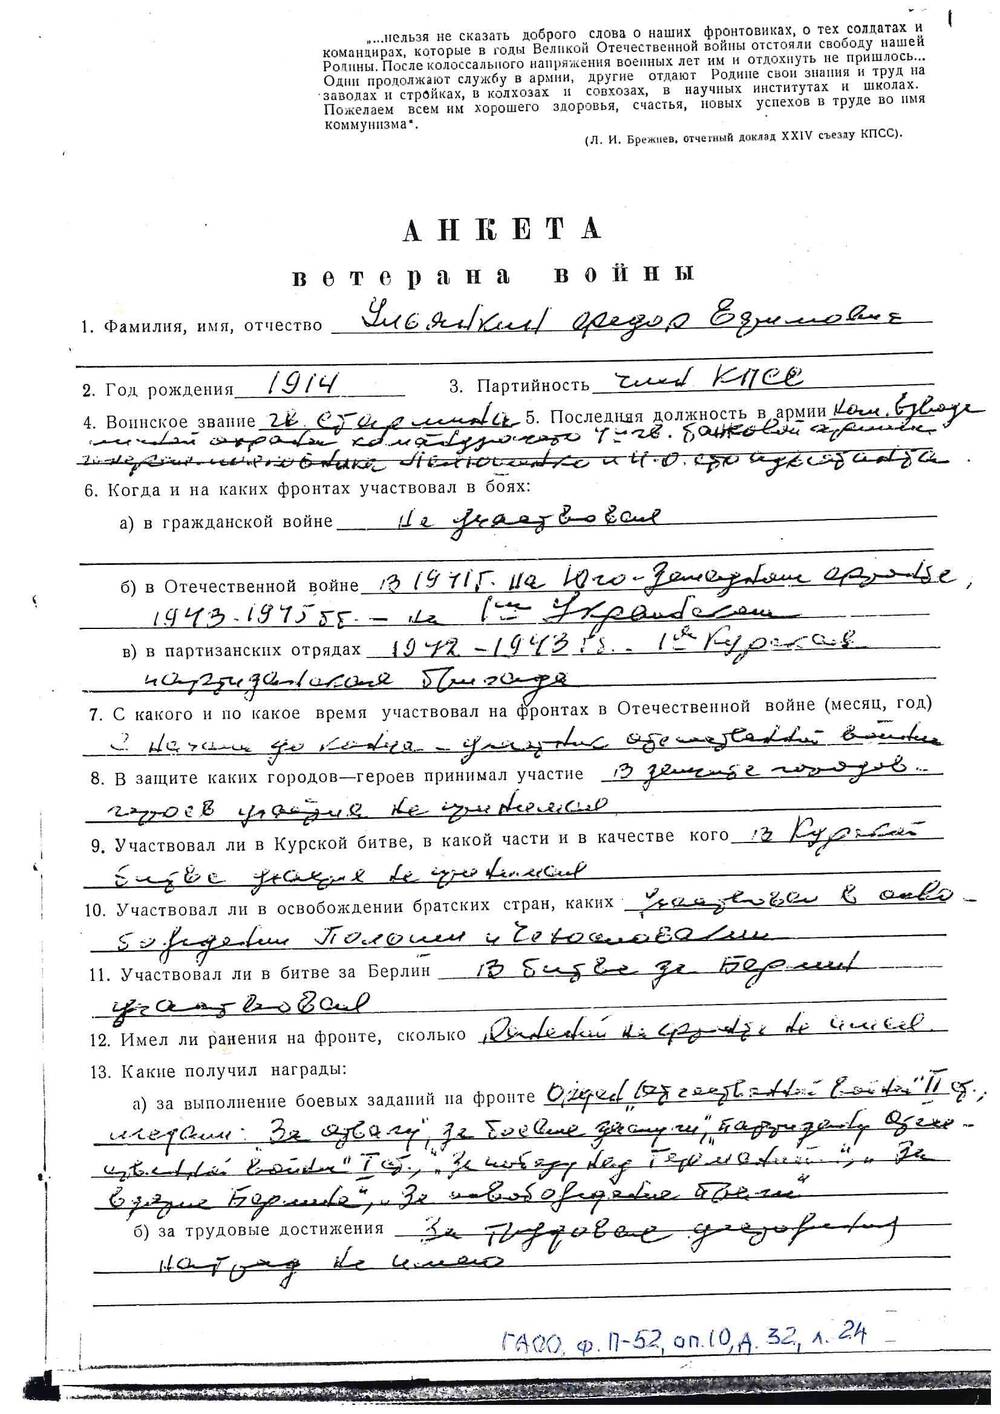 Ксерокопия анкеты ветерана войны Ульянкина Ф.Е.